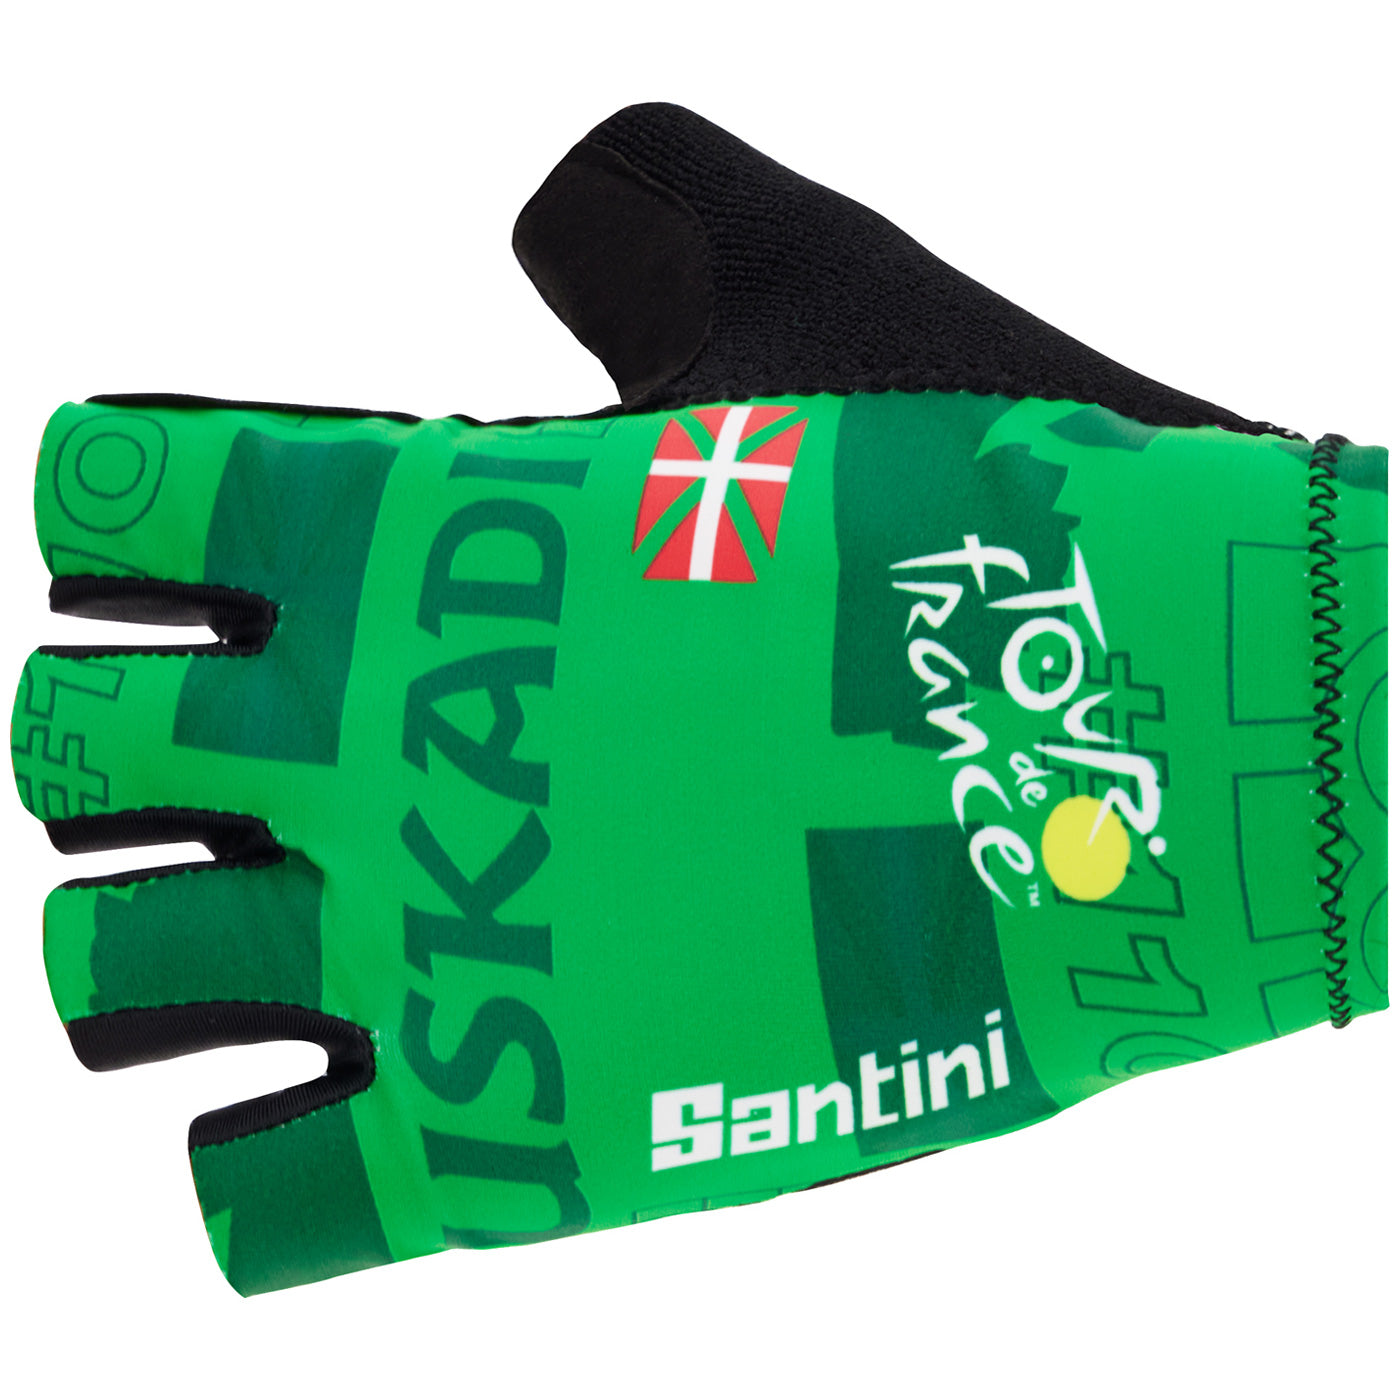 Tour de France gloves - Gran Depart Pais Vasco